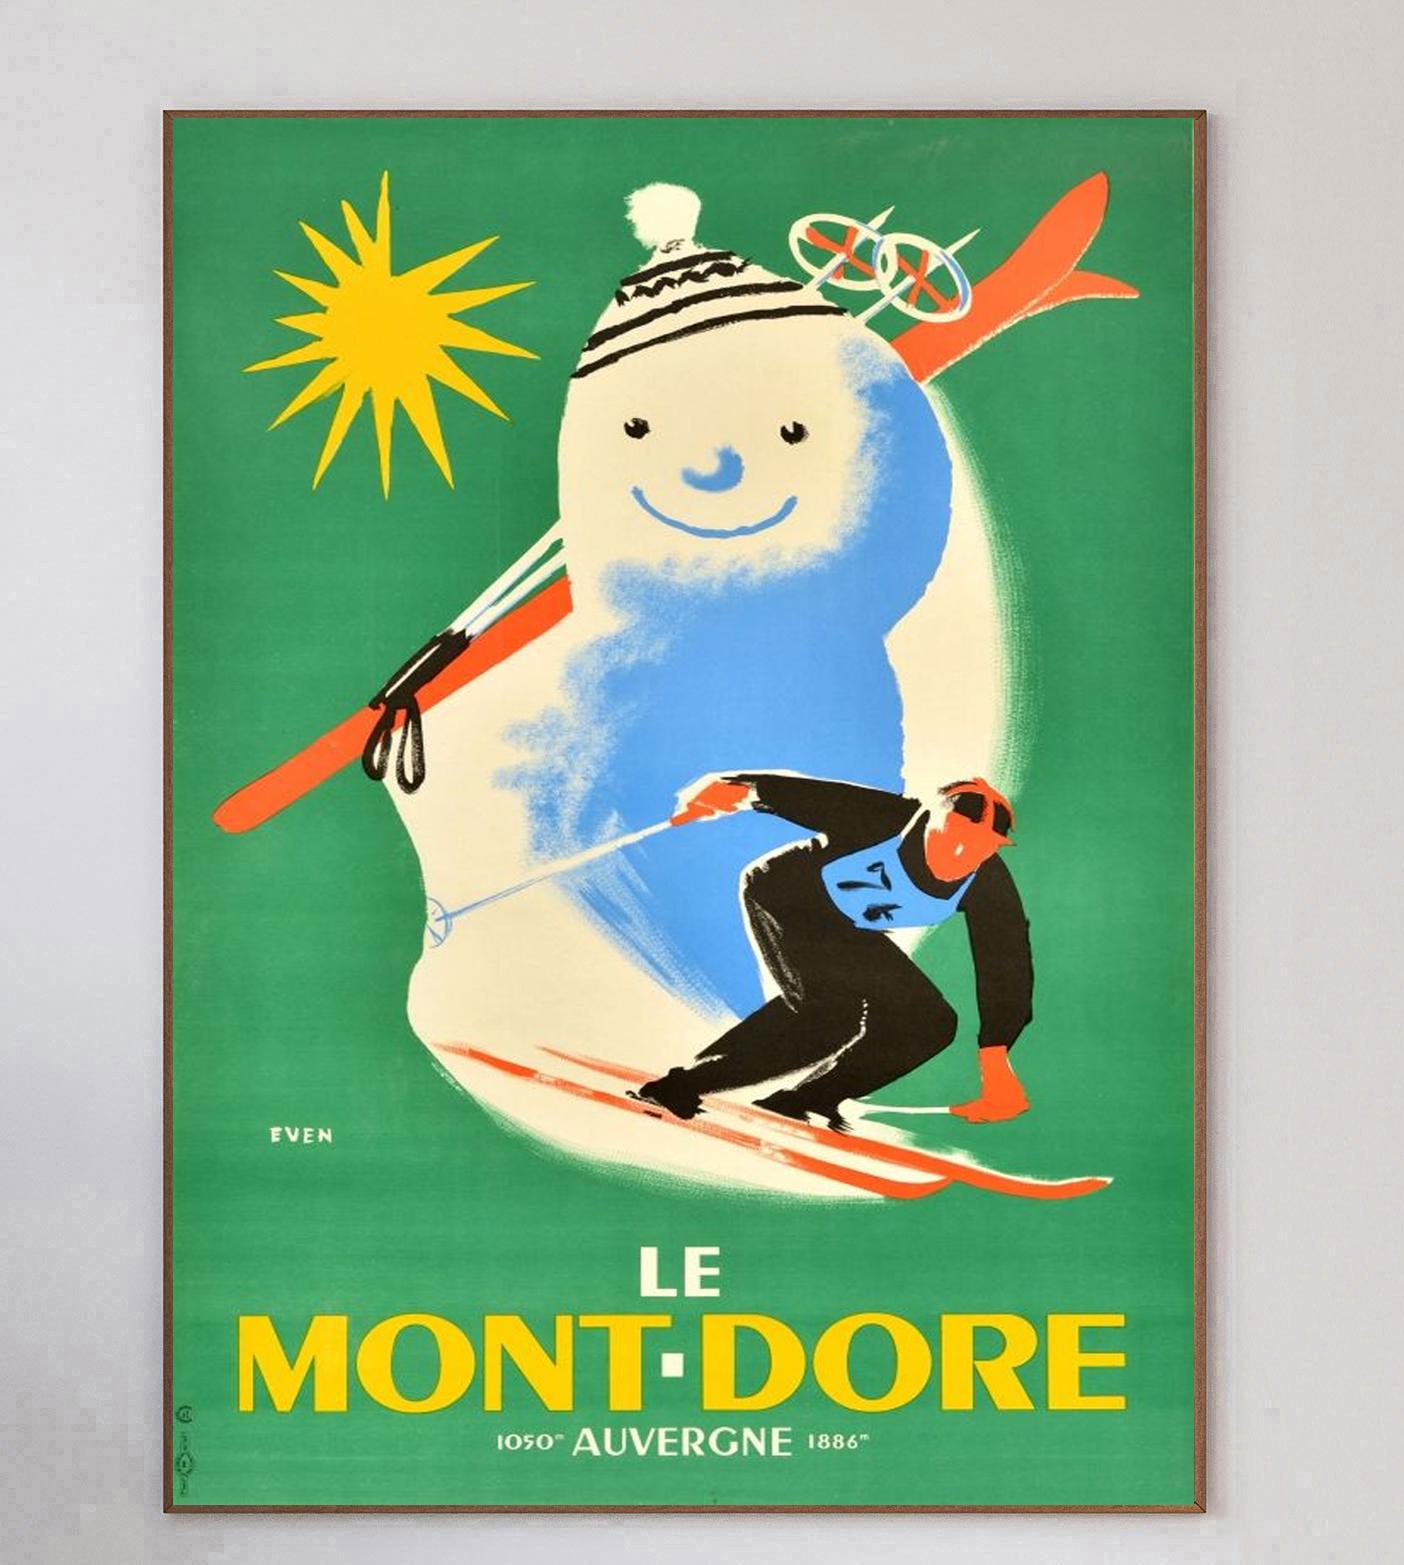 Cette affiche a été créée en 1940 pour faire la promotion de la région du Monte-Dore, en Auvergne-Rhône-Alpes, dans le centre de la France. Elle est illustrée par un superbe dessin de Jean Even.

Le magnifique design représente un homme dévalant les